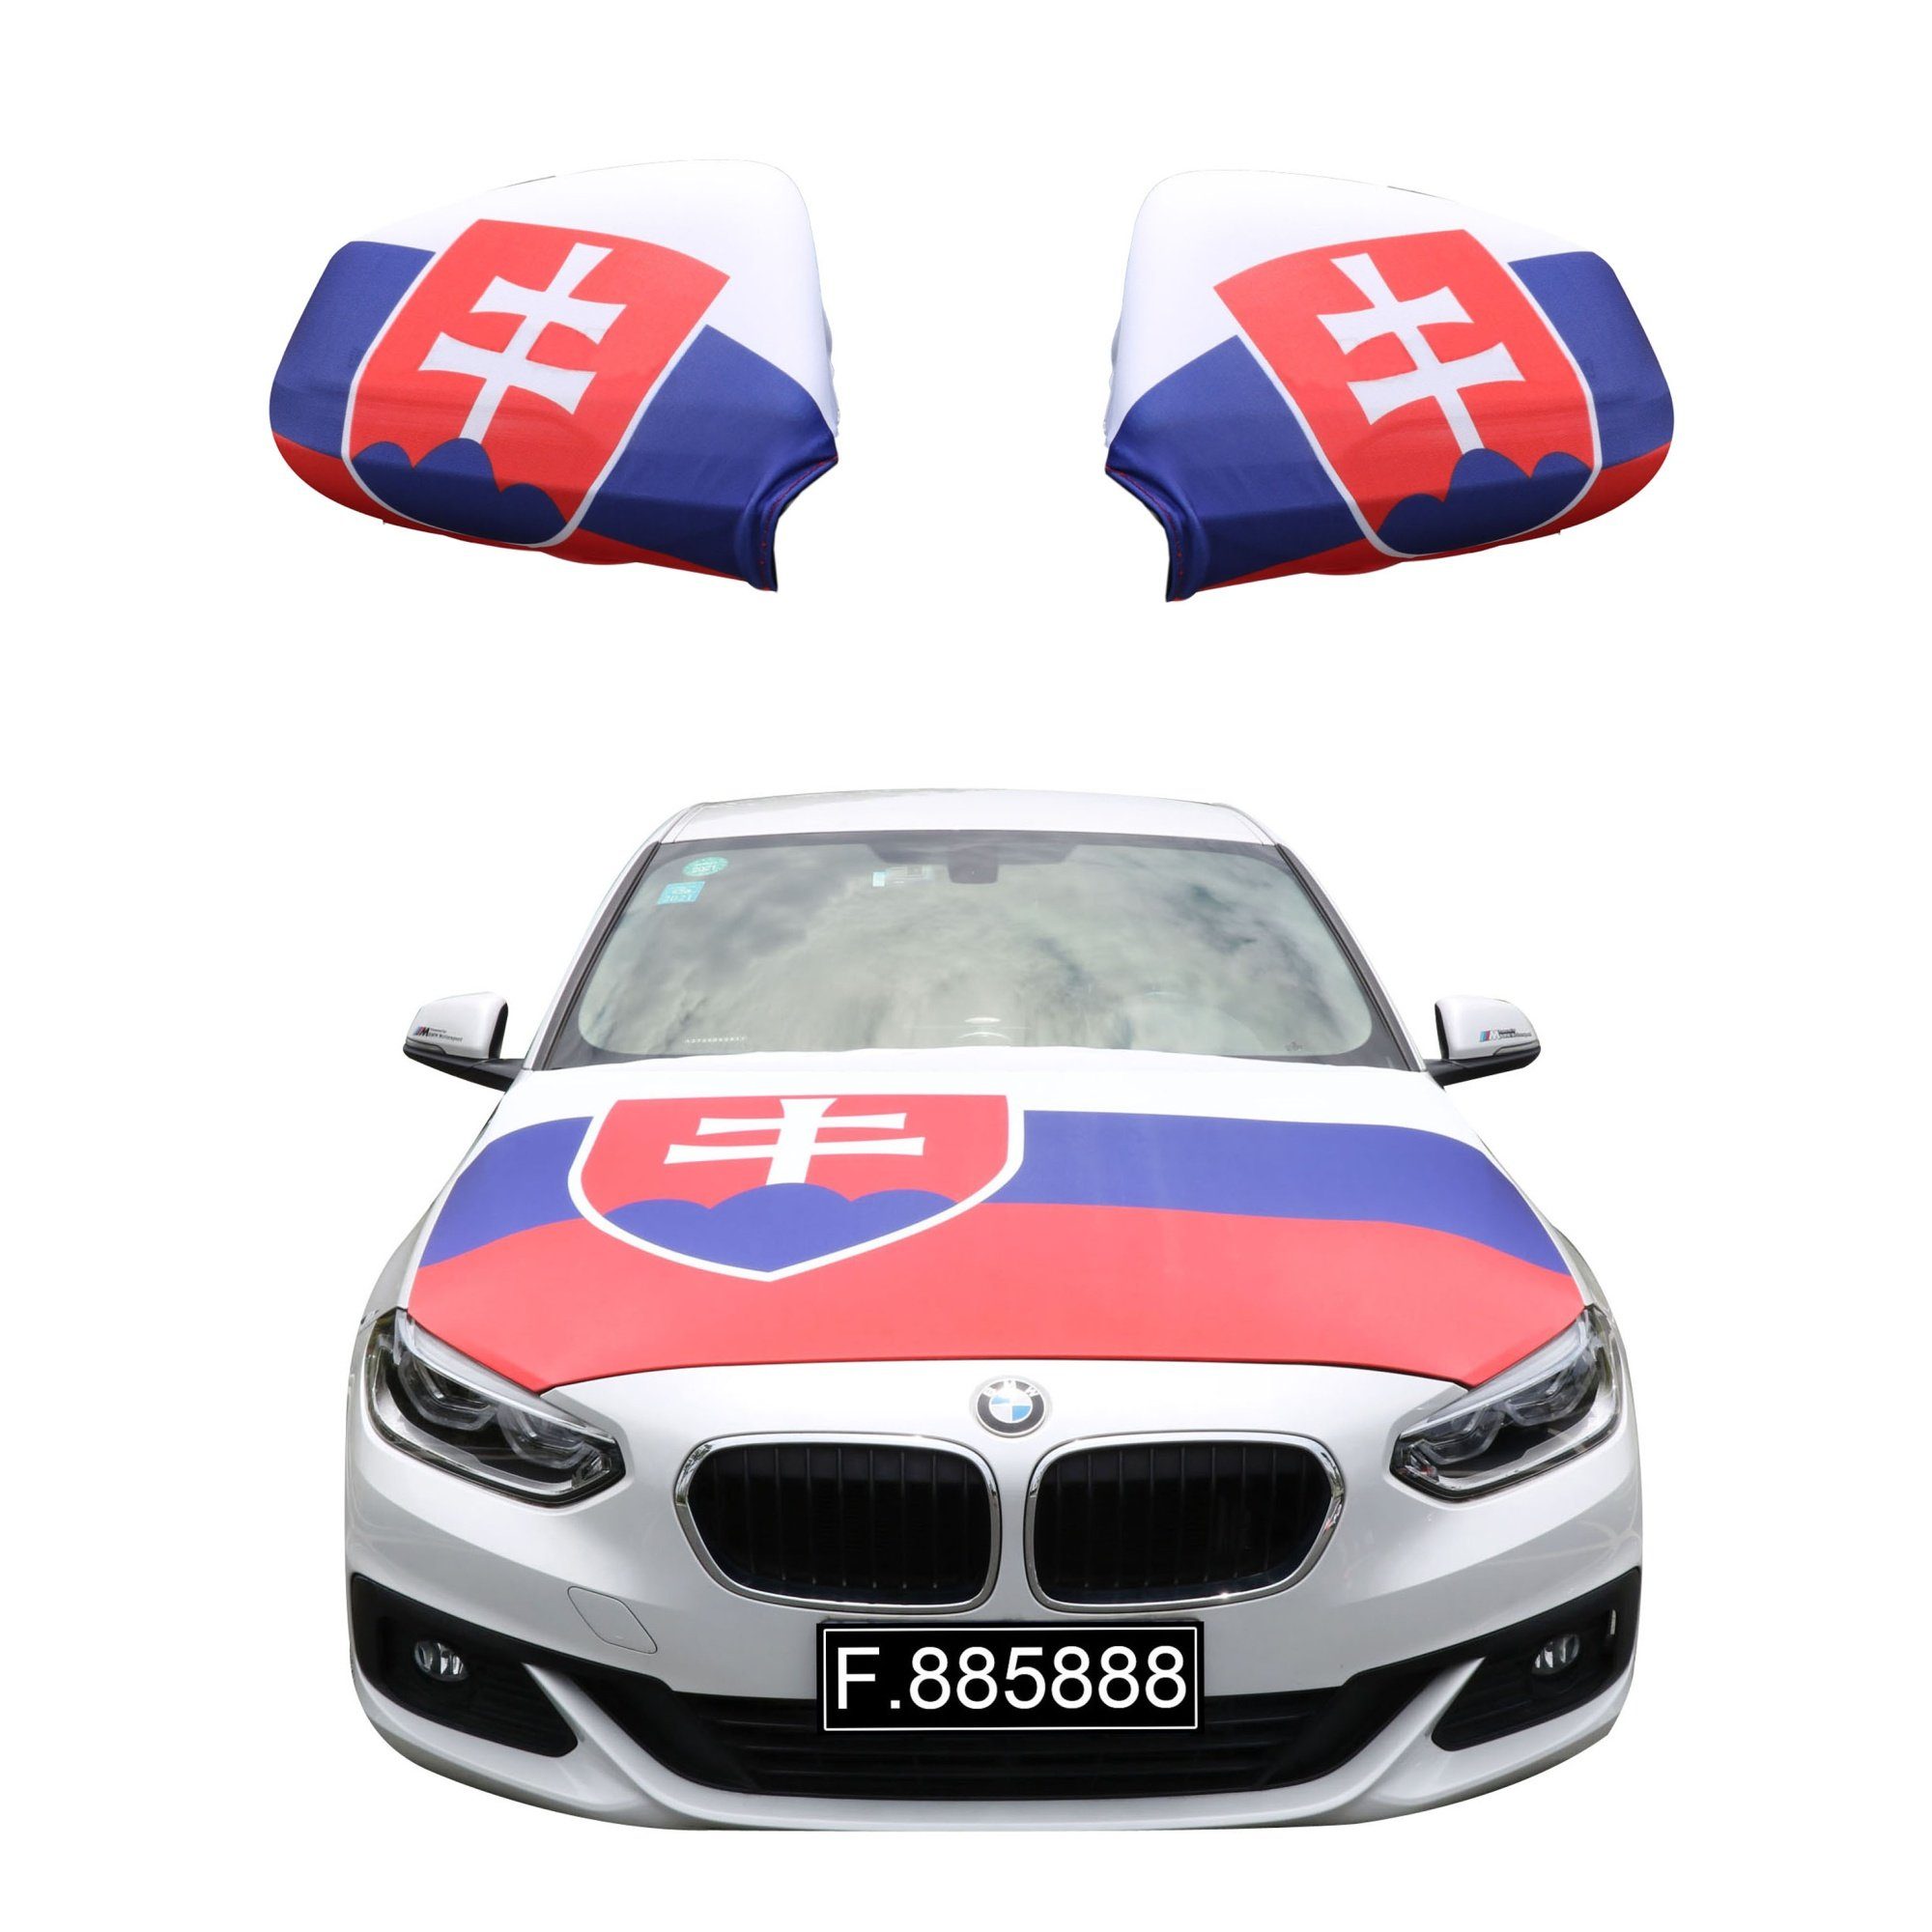 Fußball Slovakia Originelli für gängigen alle Flagge: 115 PKW x Außenspiegel "Slowakei" Motorhauben Flagge, ca. Fahne Motorhaube 150cm Sonia Modelle, Fanset